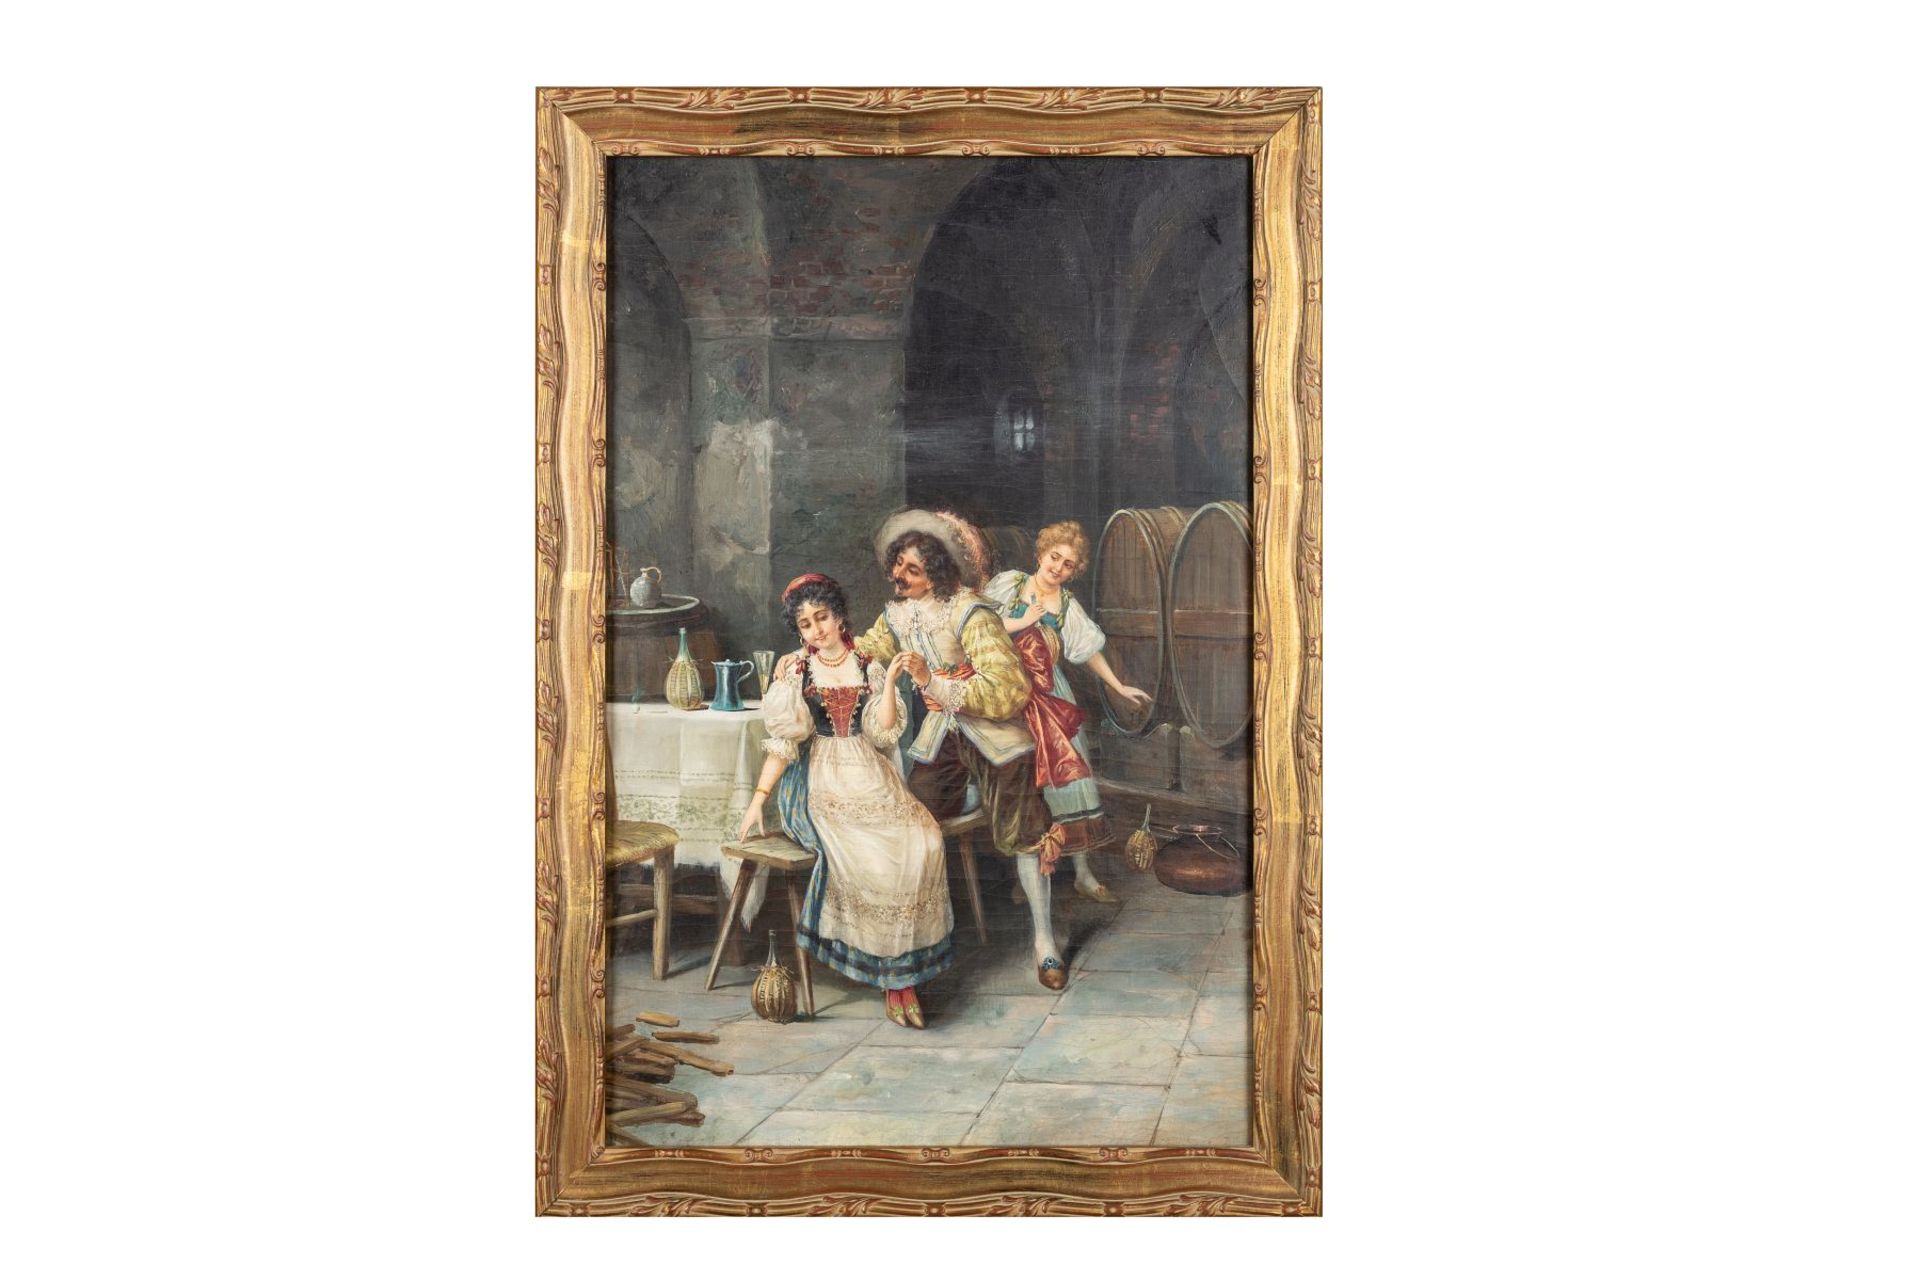 German Artist around 1880 "The Gallant Guest"